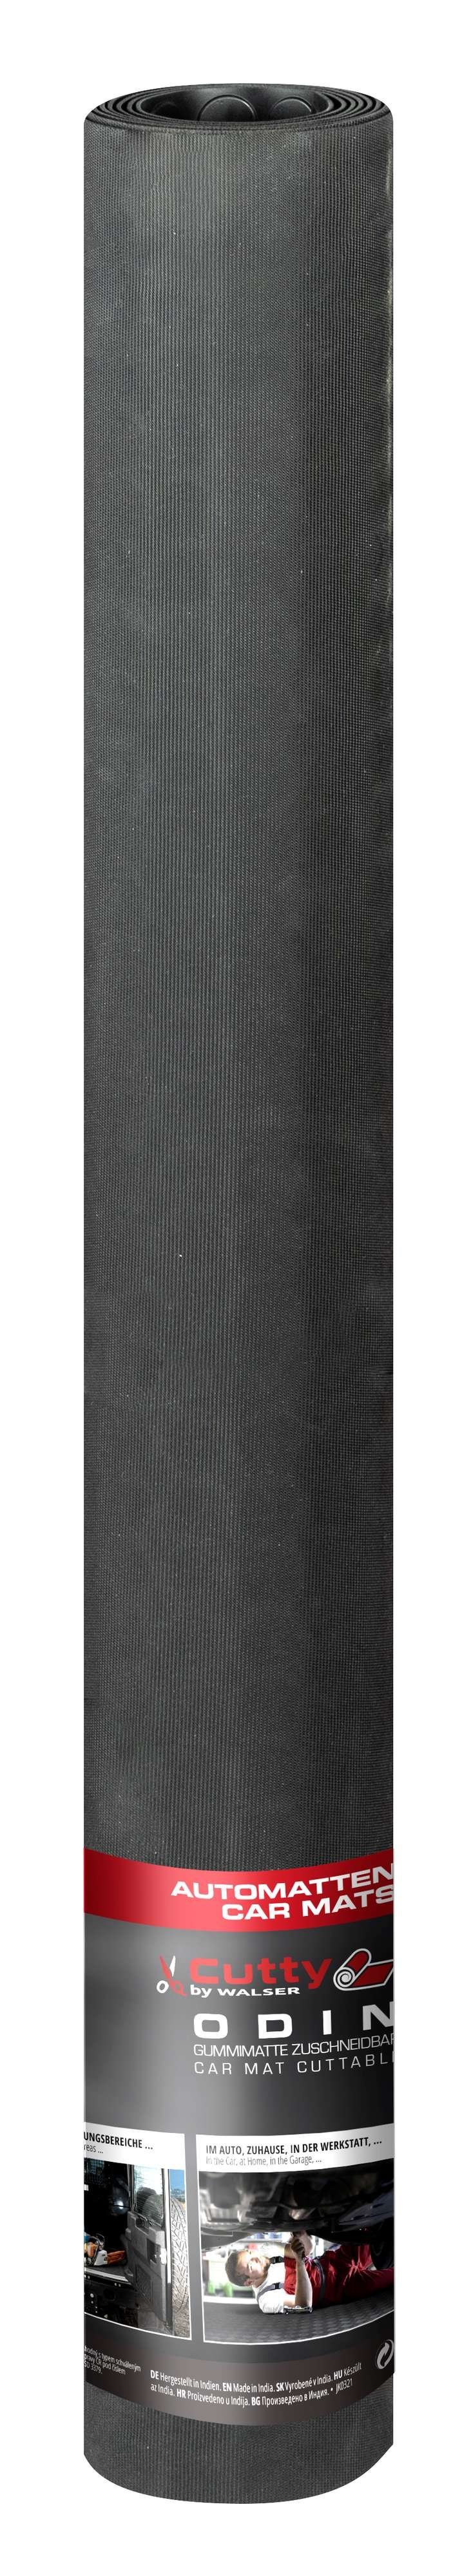 Automat Odin geribbeld, op maat gesneden automat 100x100 cm, universele beschermmat, kofferbakmat, vuilvangmat zwart